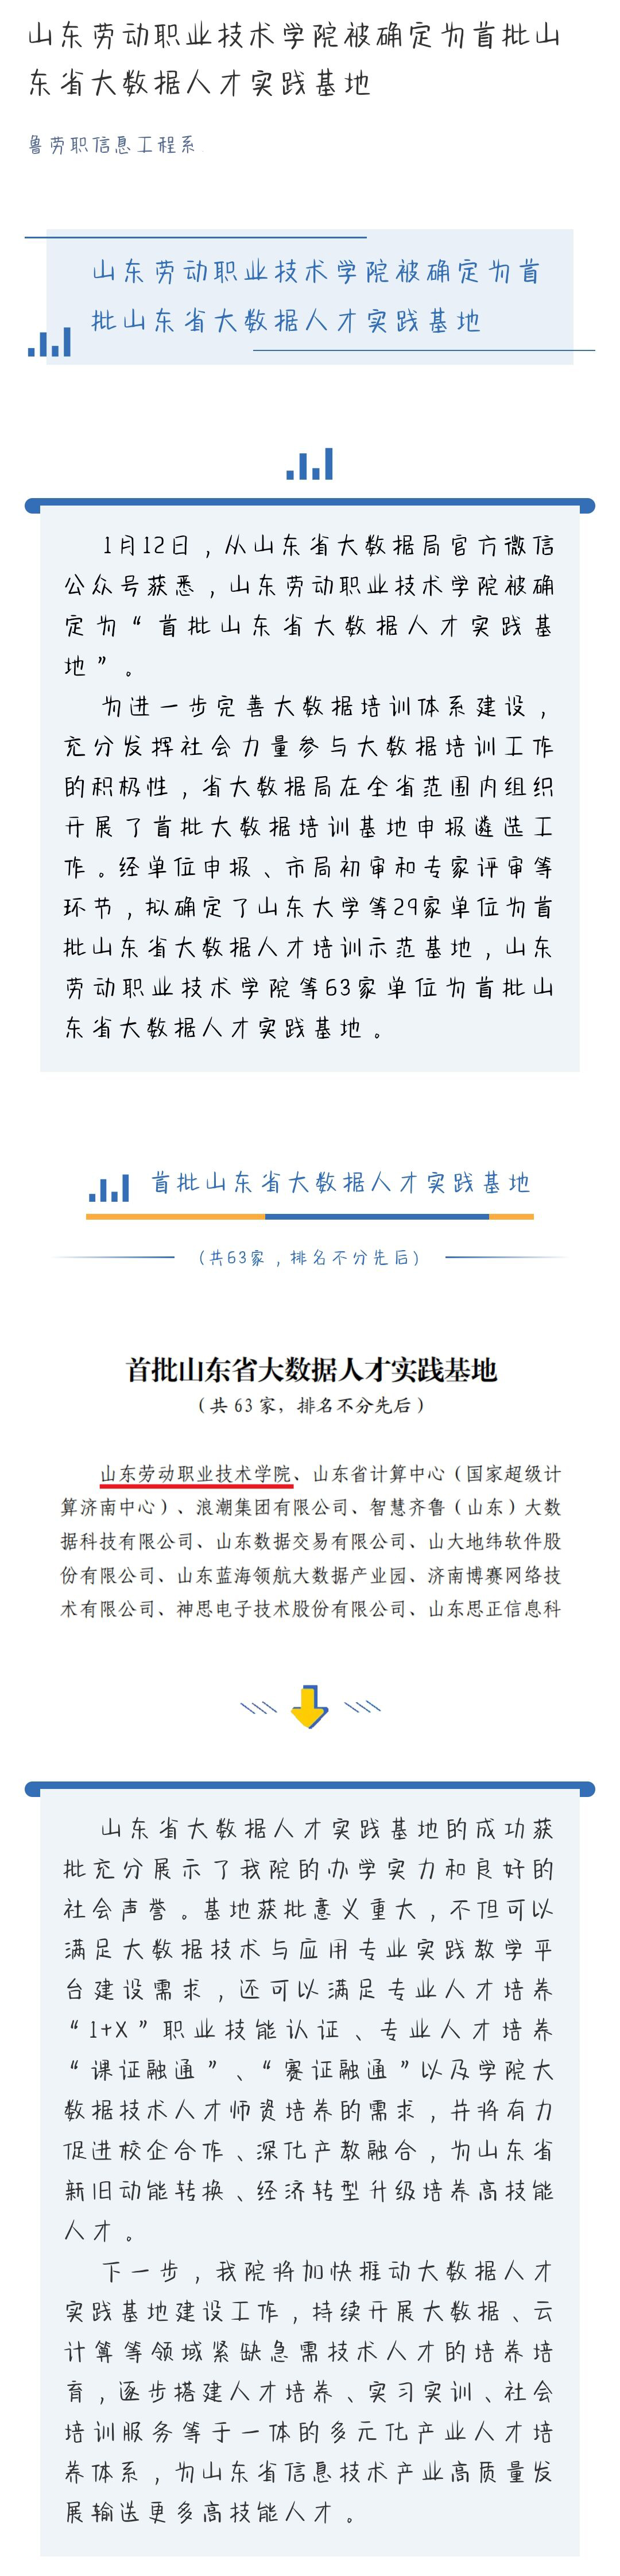 山东劳动职业技术学院被确定为首批山东省大数据人才实践基地.jpg